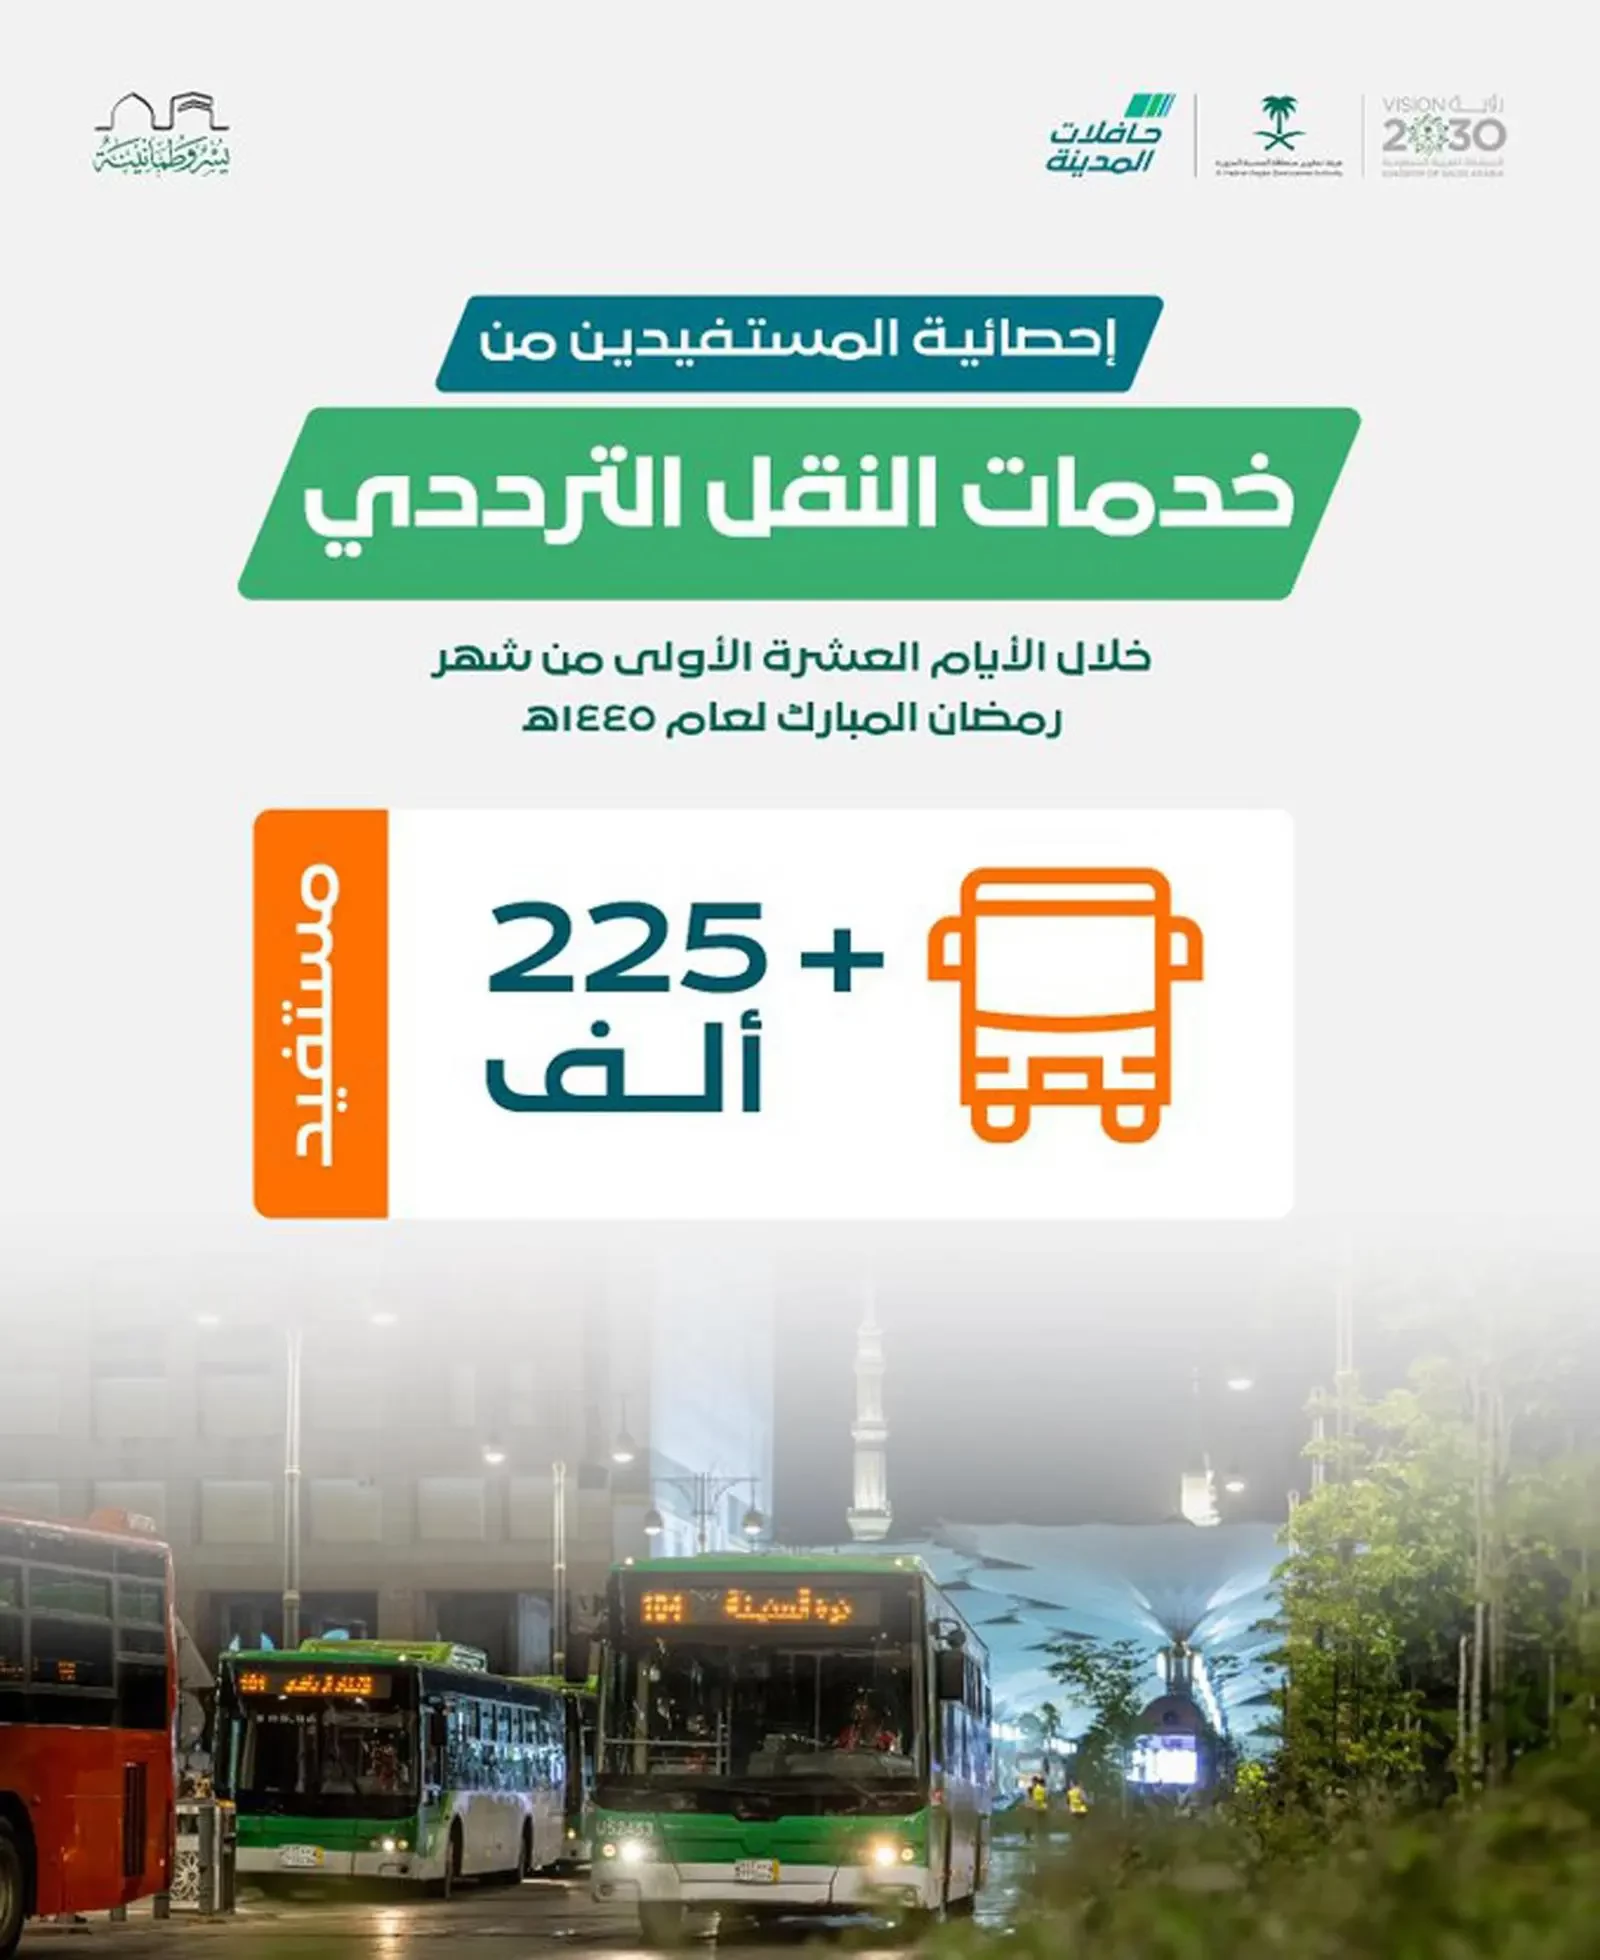 خلال الثلث الأول من رمضان .. أكثر من 250 ألف مستفيد من خدمات مشروع حافلات المدينة